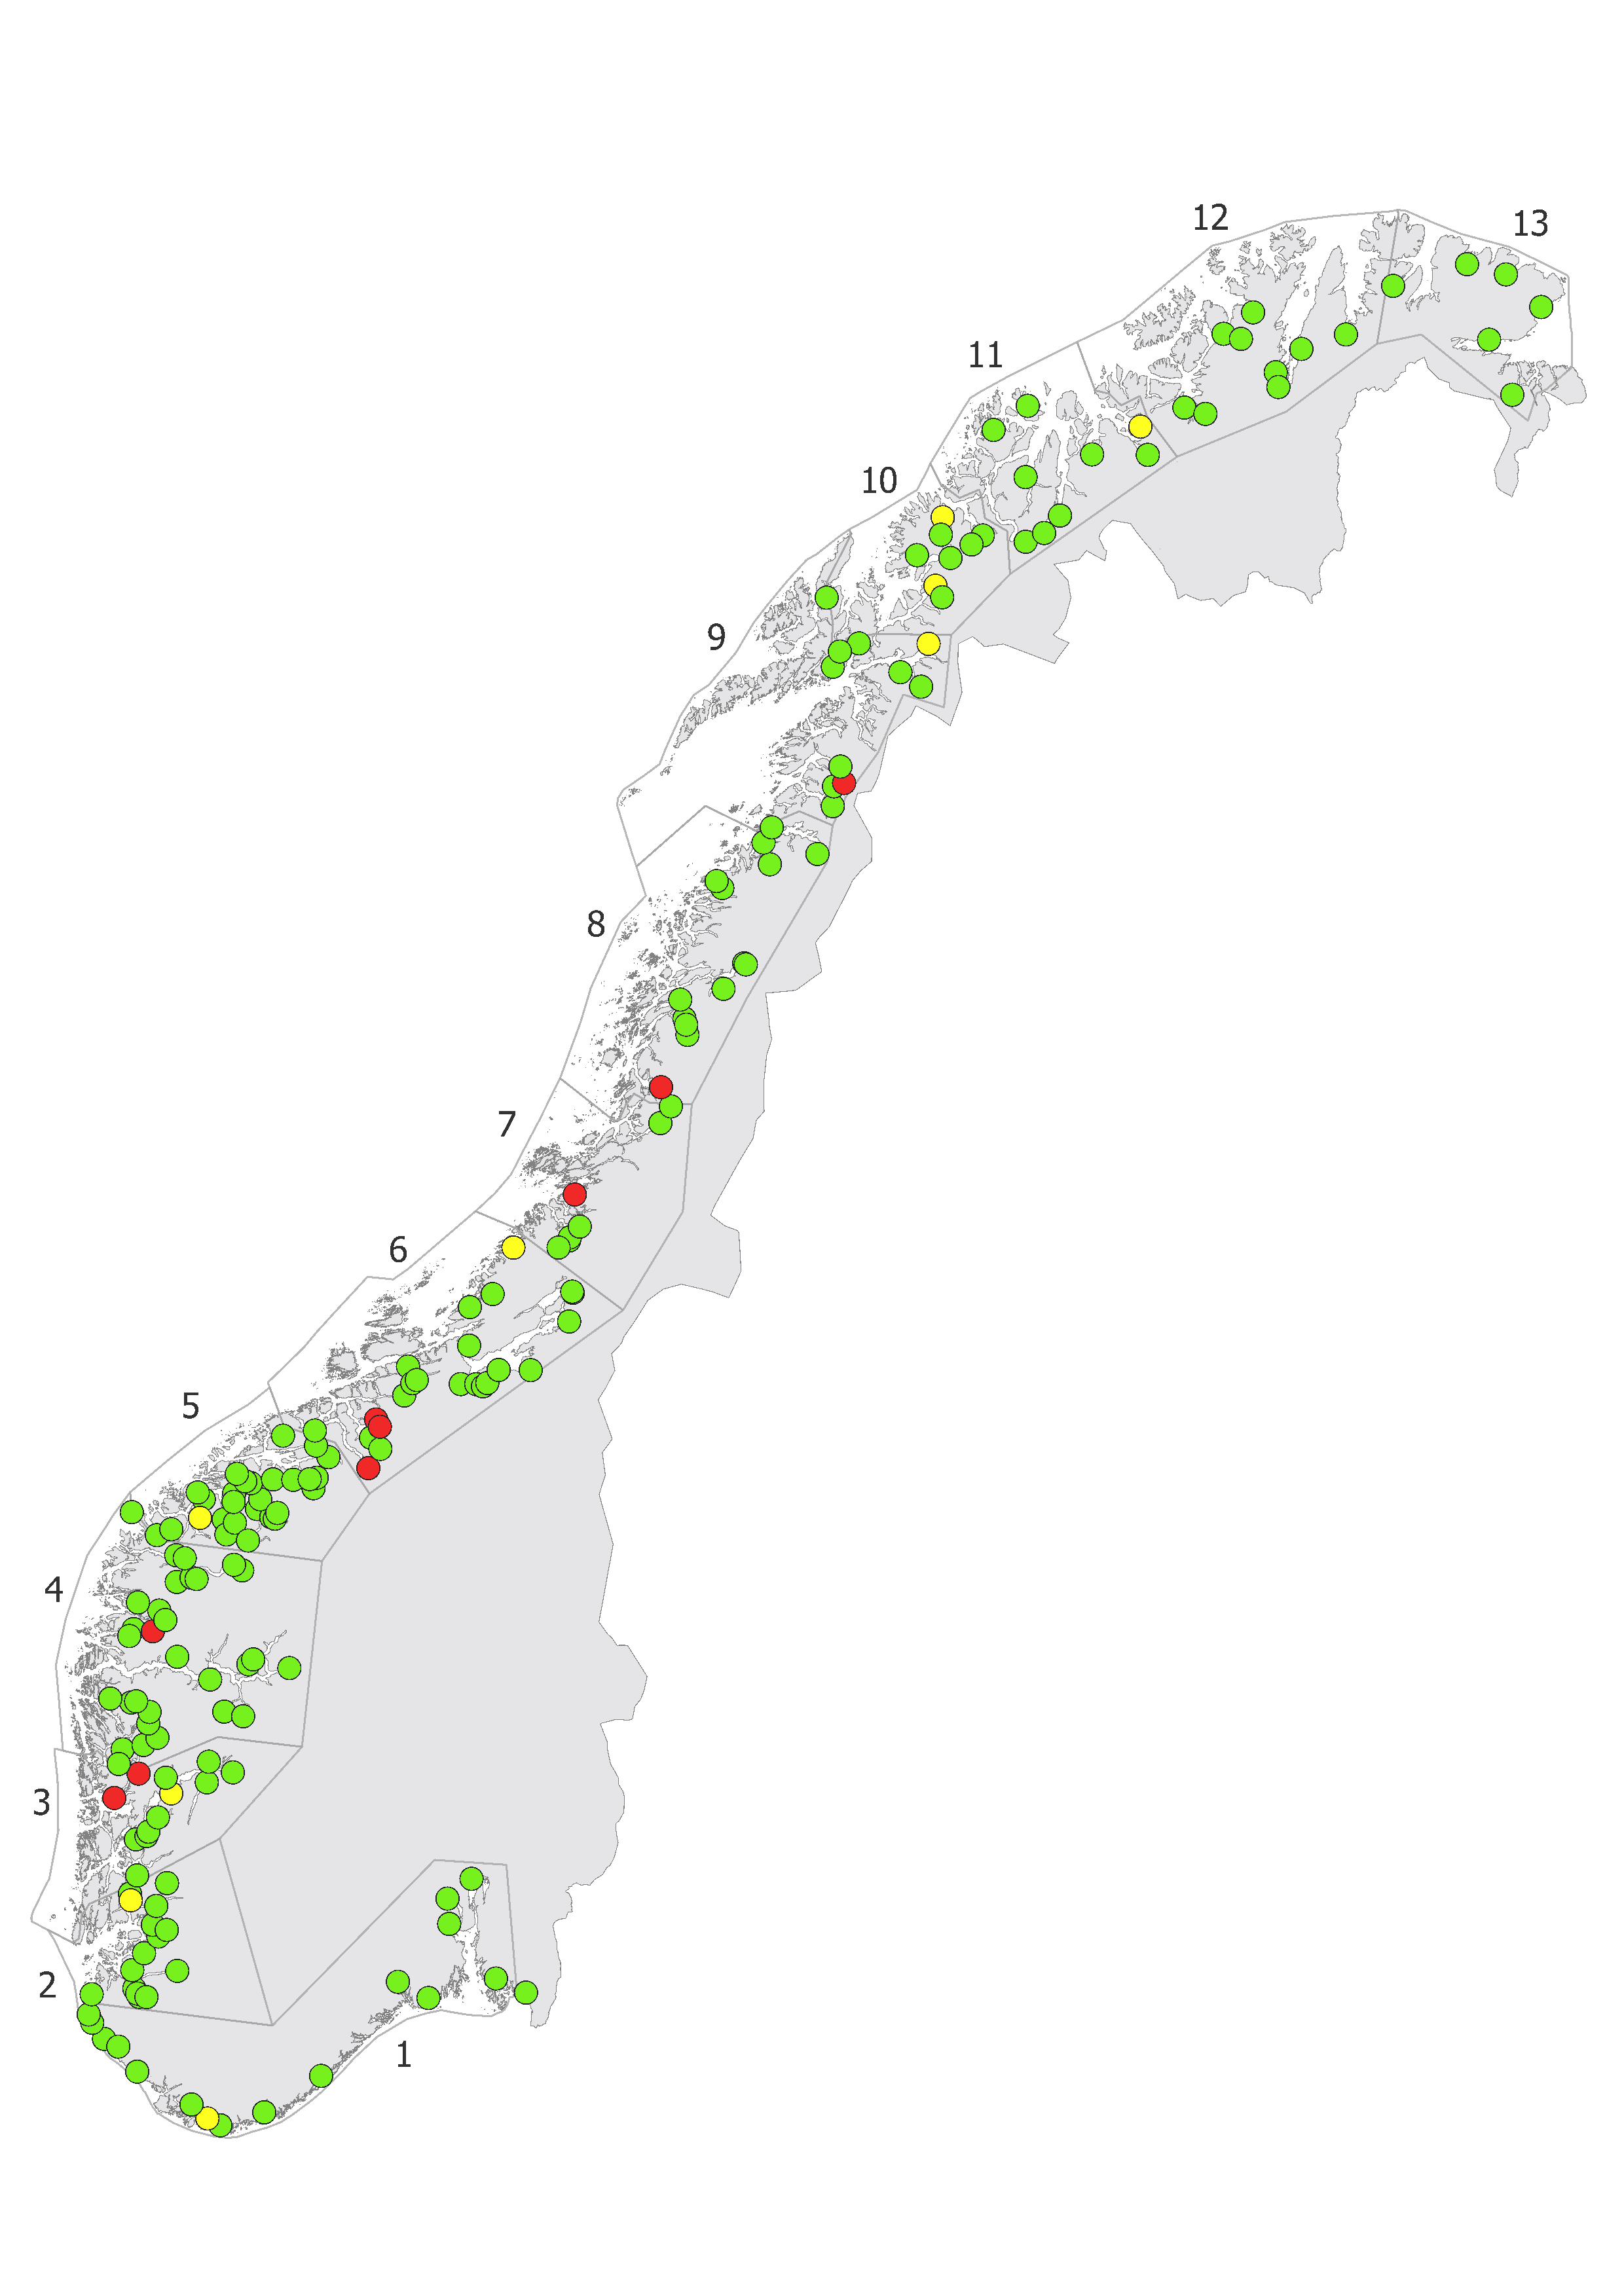 Kart som med punkter i farger som viser innslag av rømt oppdrettslaks i vassdragene